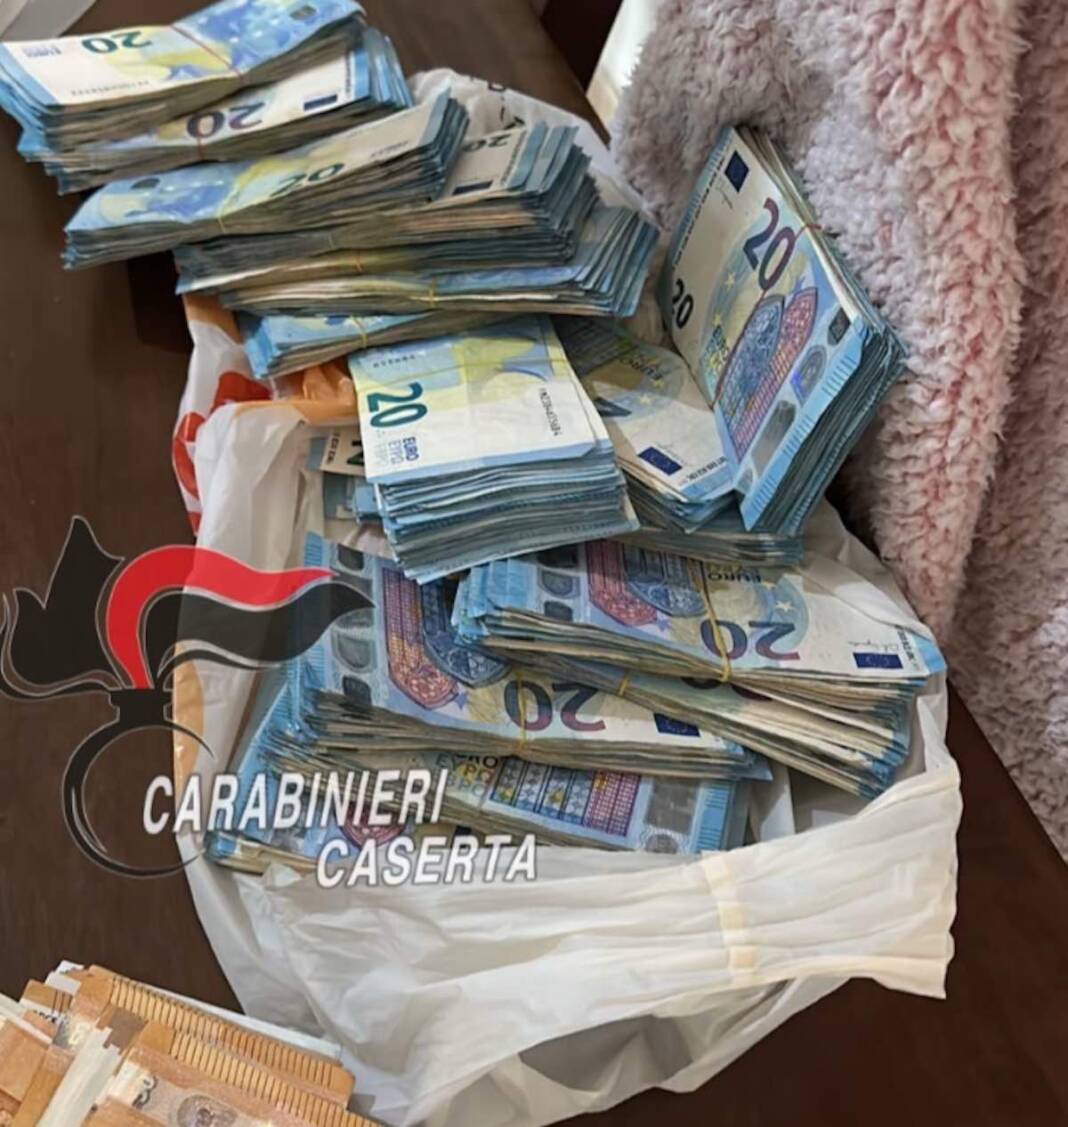 Villa Literno, trovato con documenti falsi e 25mila euro in contanti: arrestato nigeriano